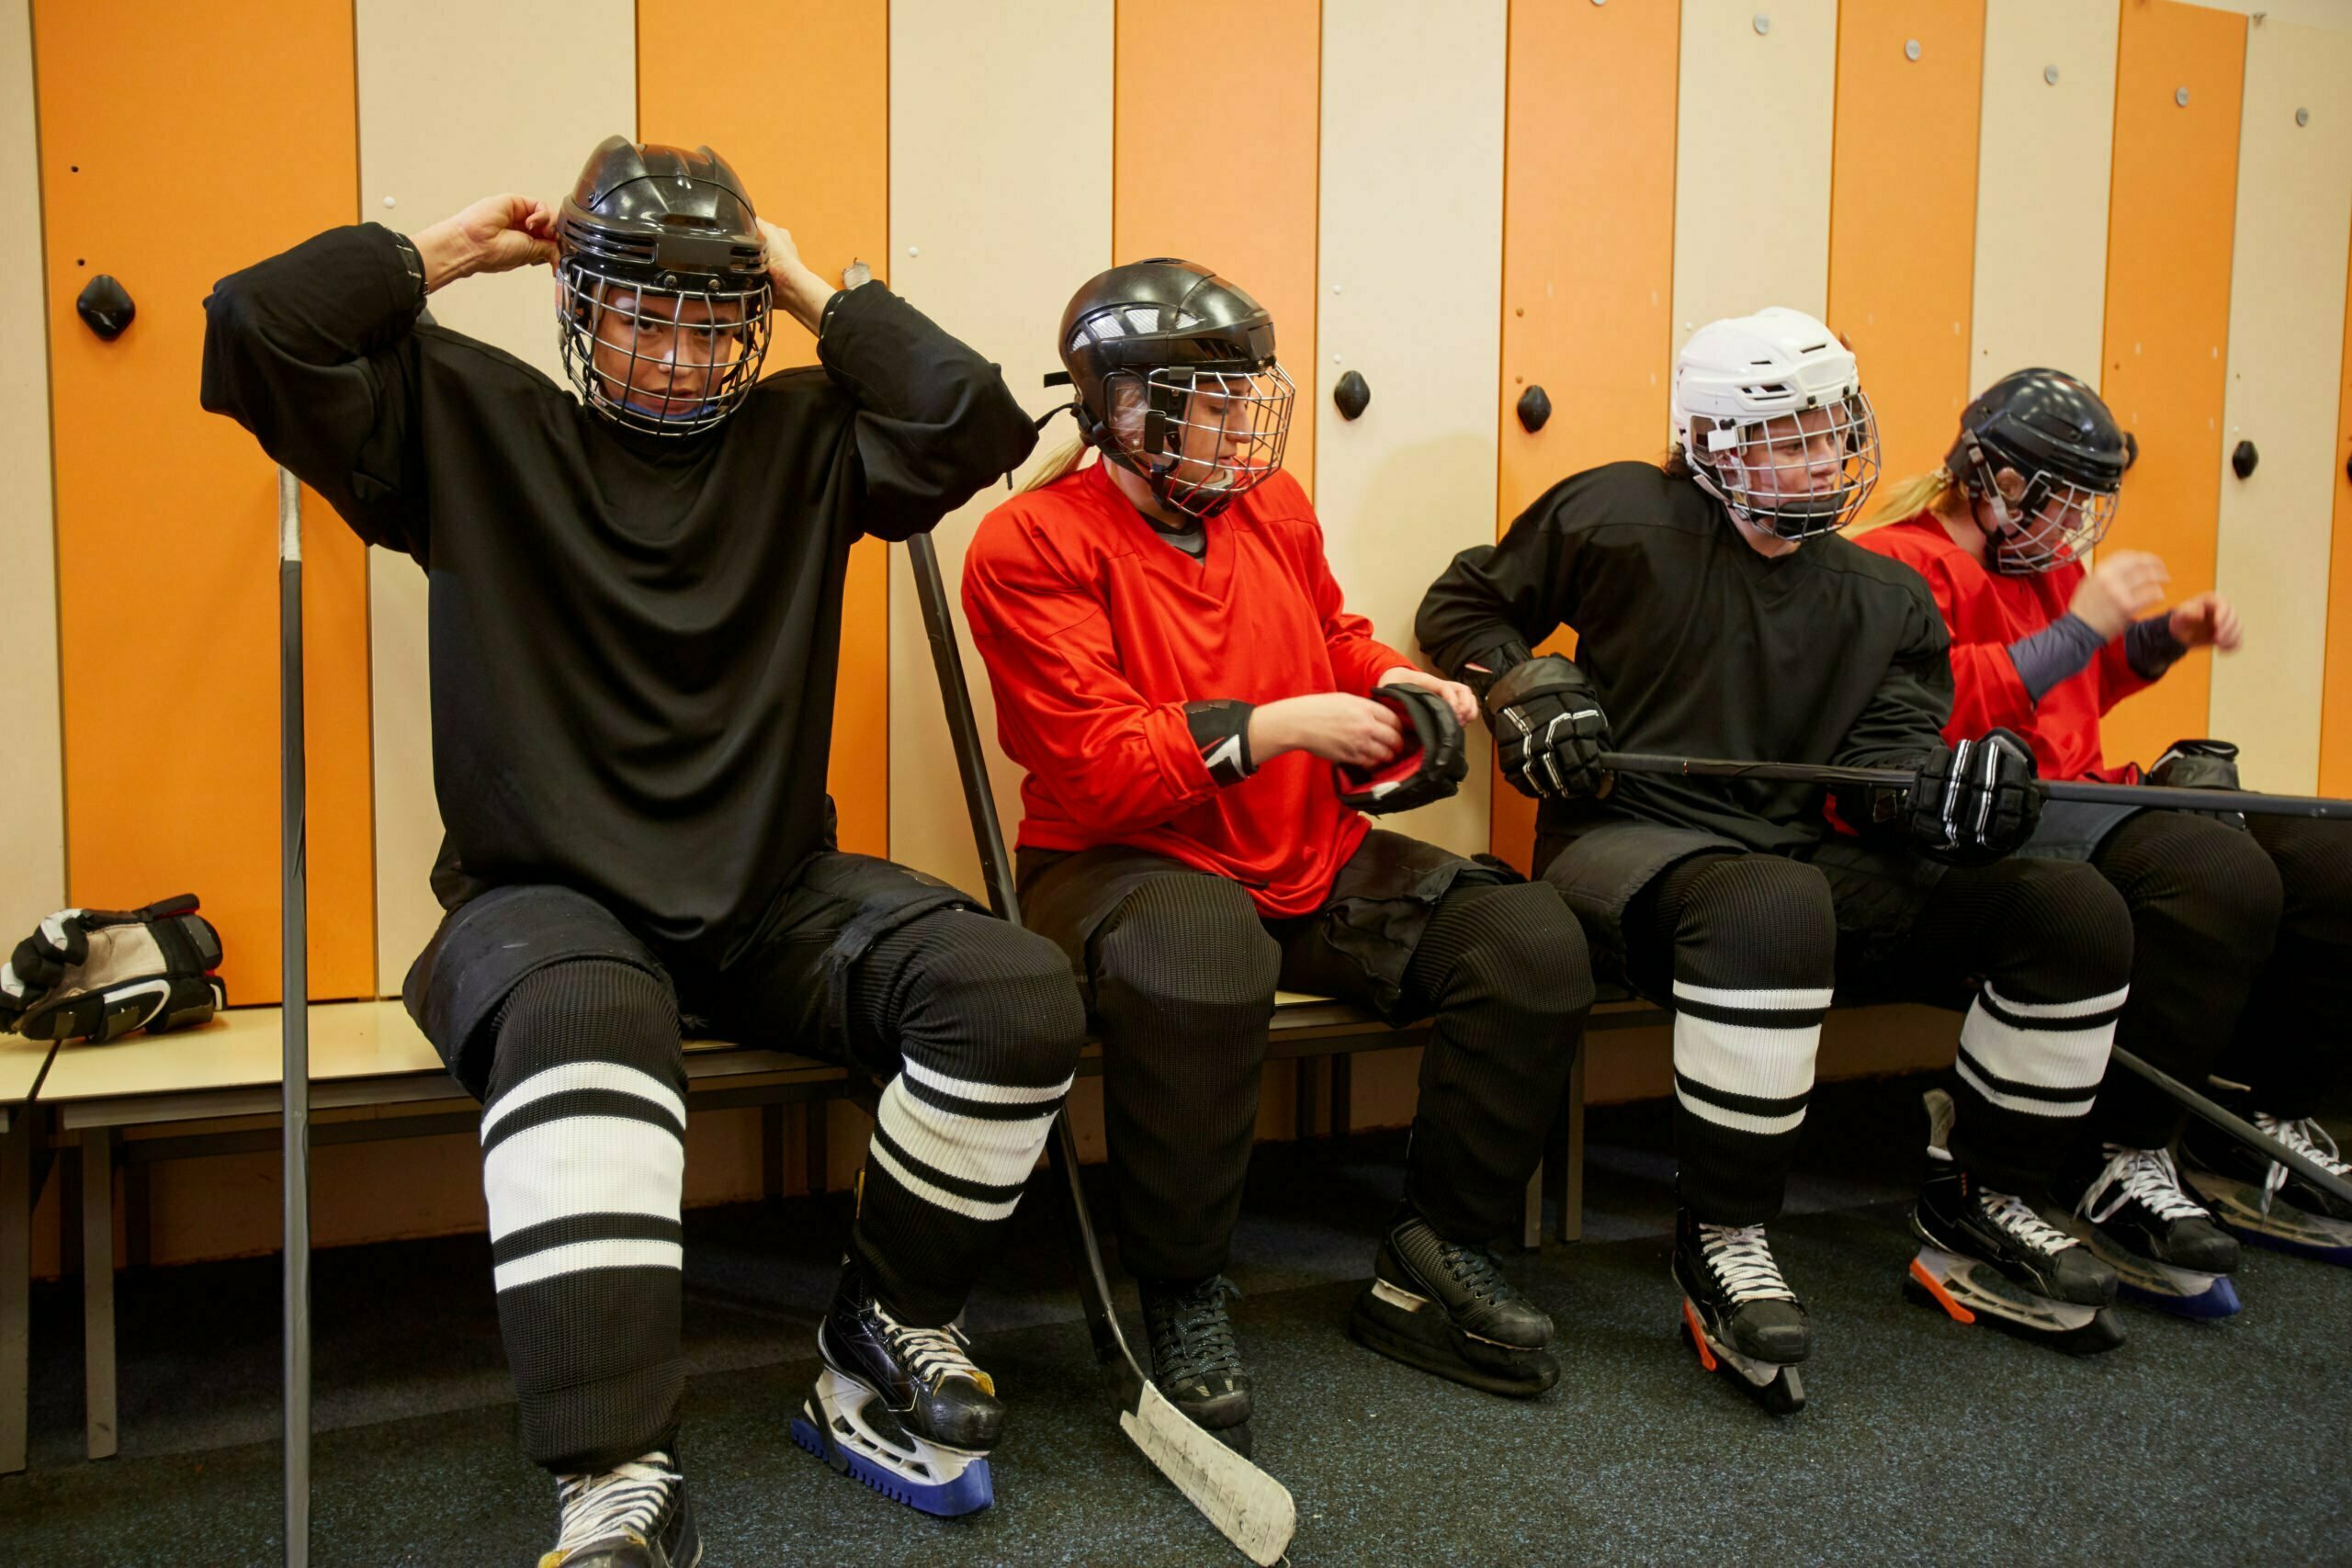 Female Hockey Team Getting Ready in Locker Room